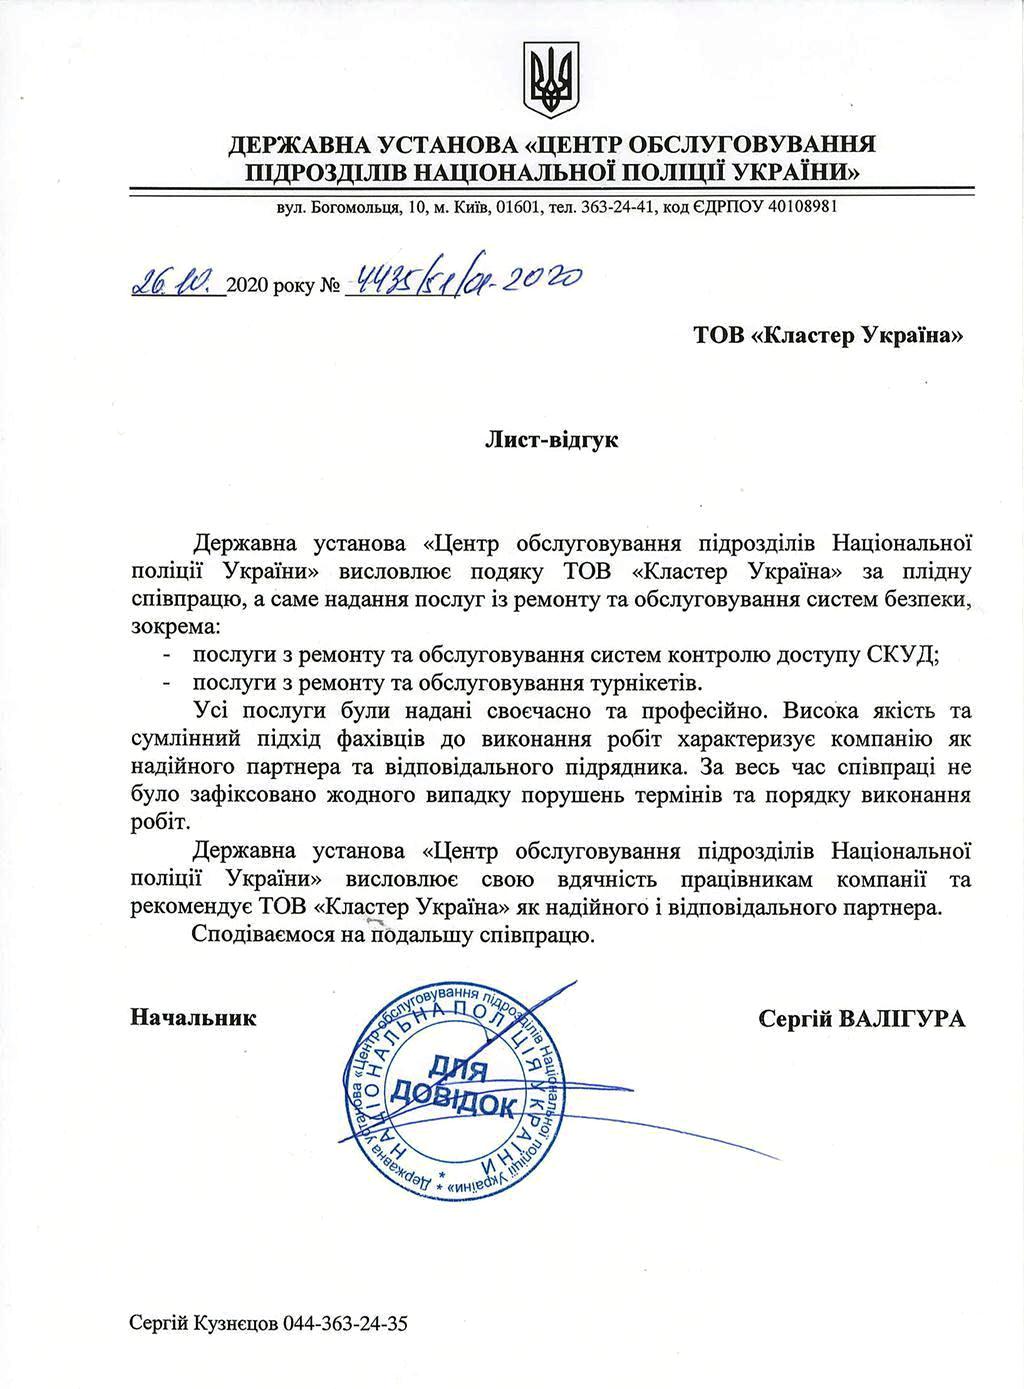 Рекомендаційний лист від Державної установи – Центр обслуговування підрозділів Національної поліції України